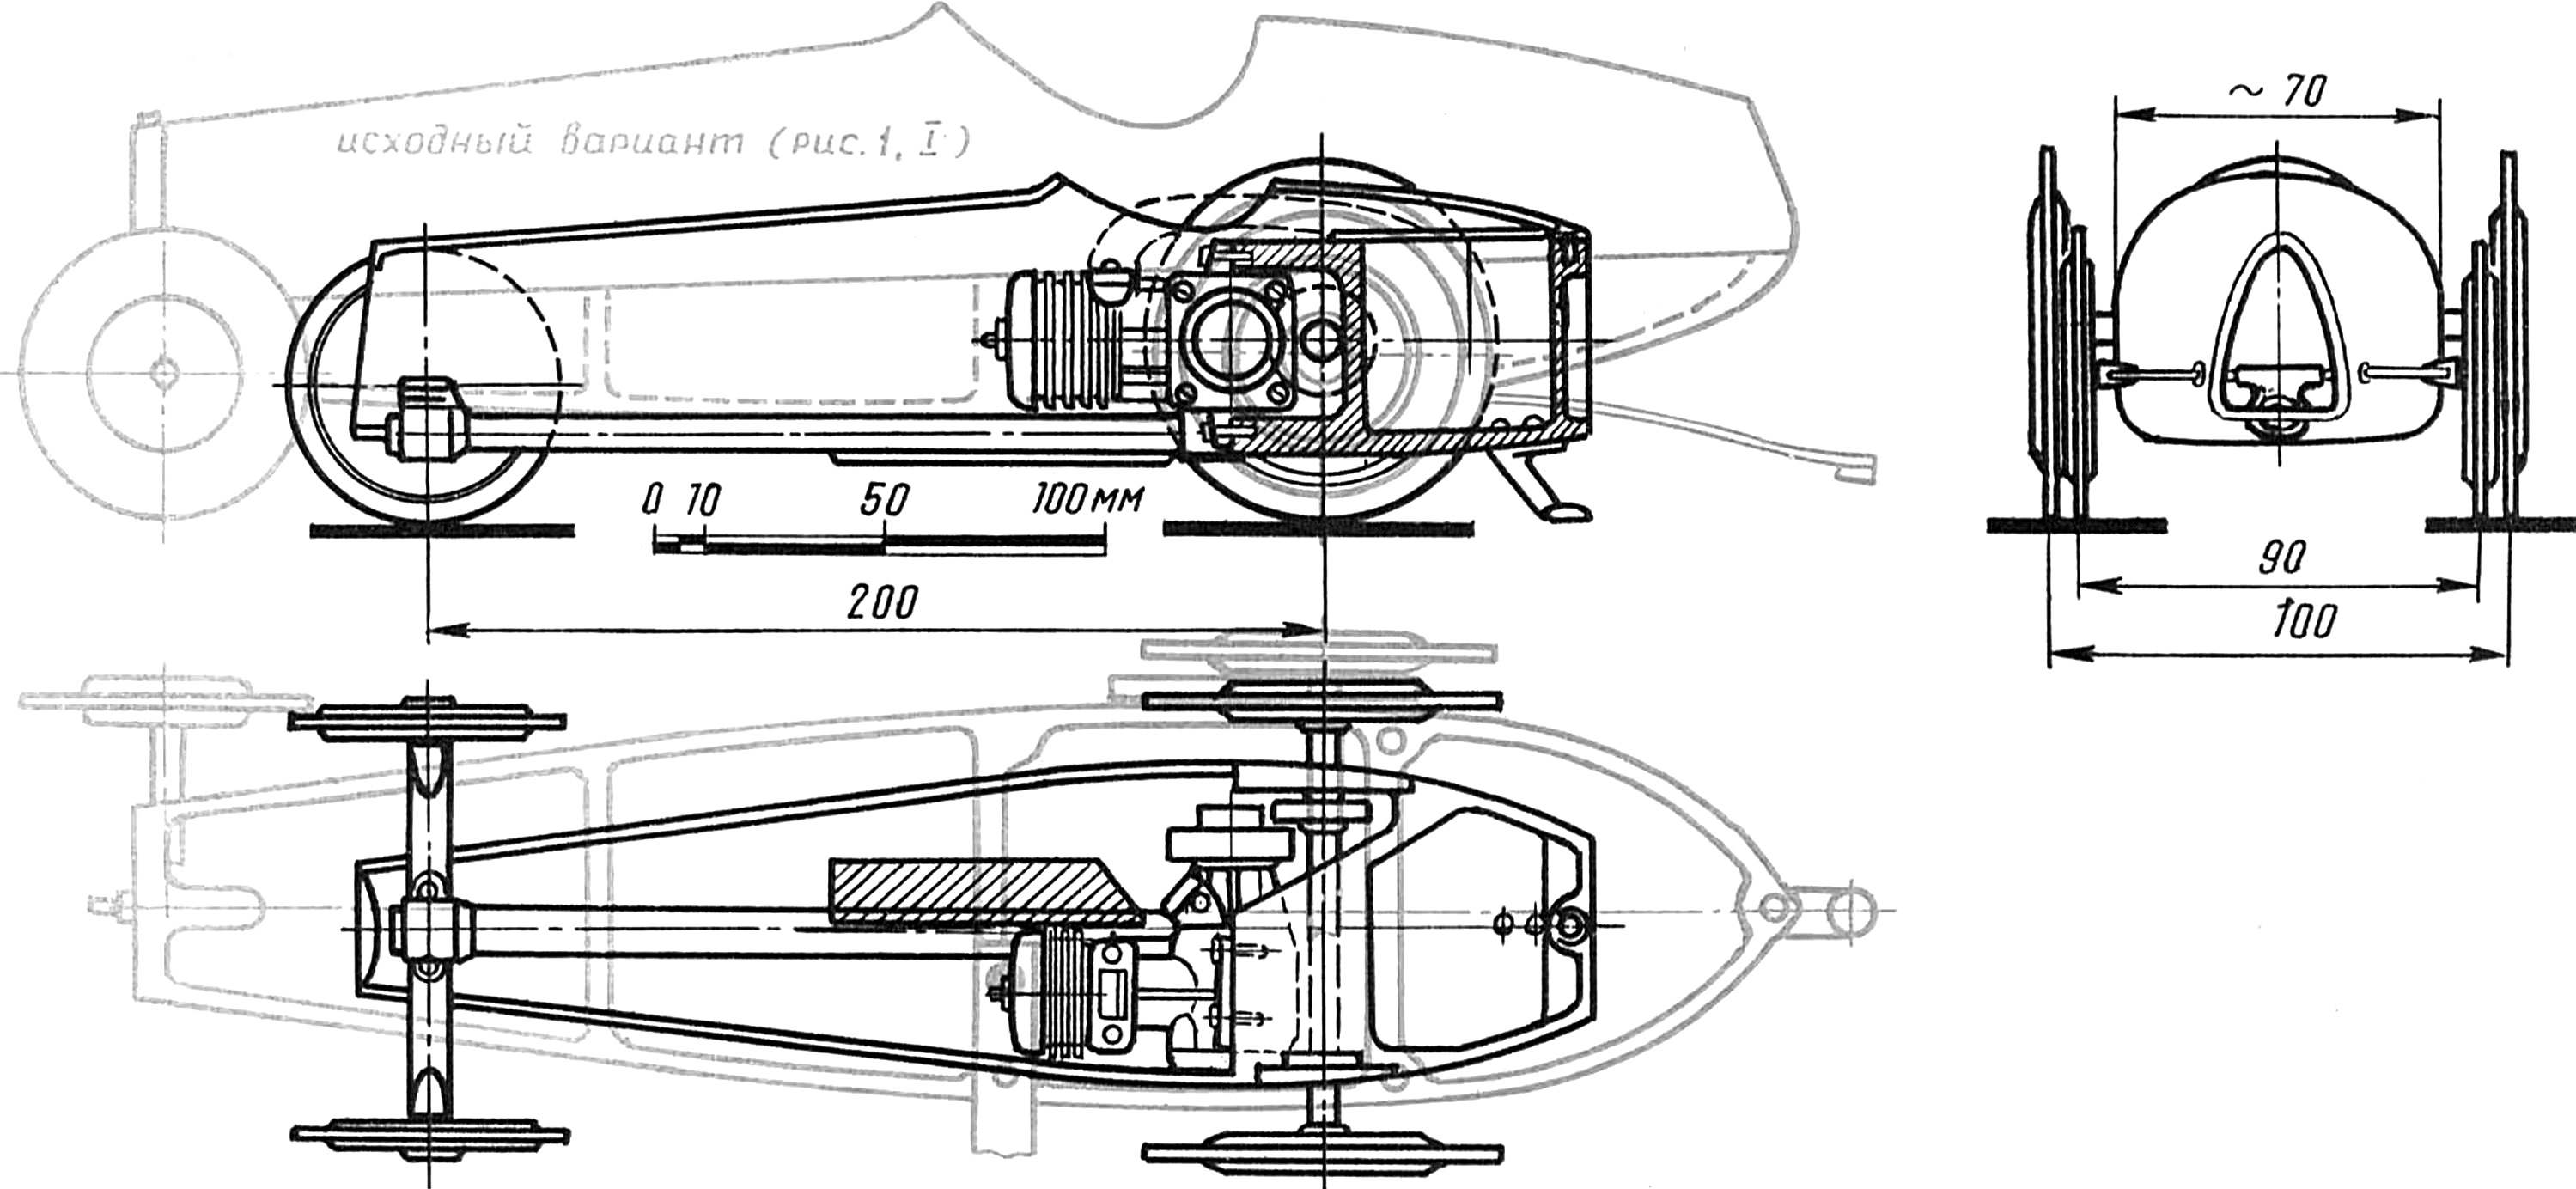 Рис. 5. Модель класса Е-5 на второй стадии проектирования.